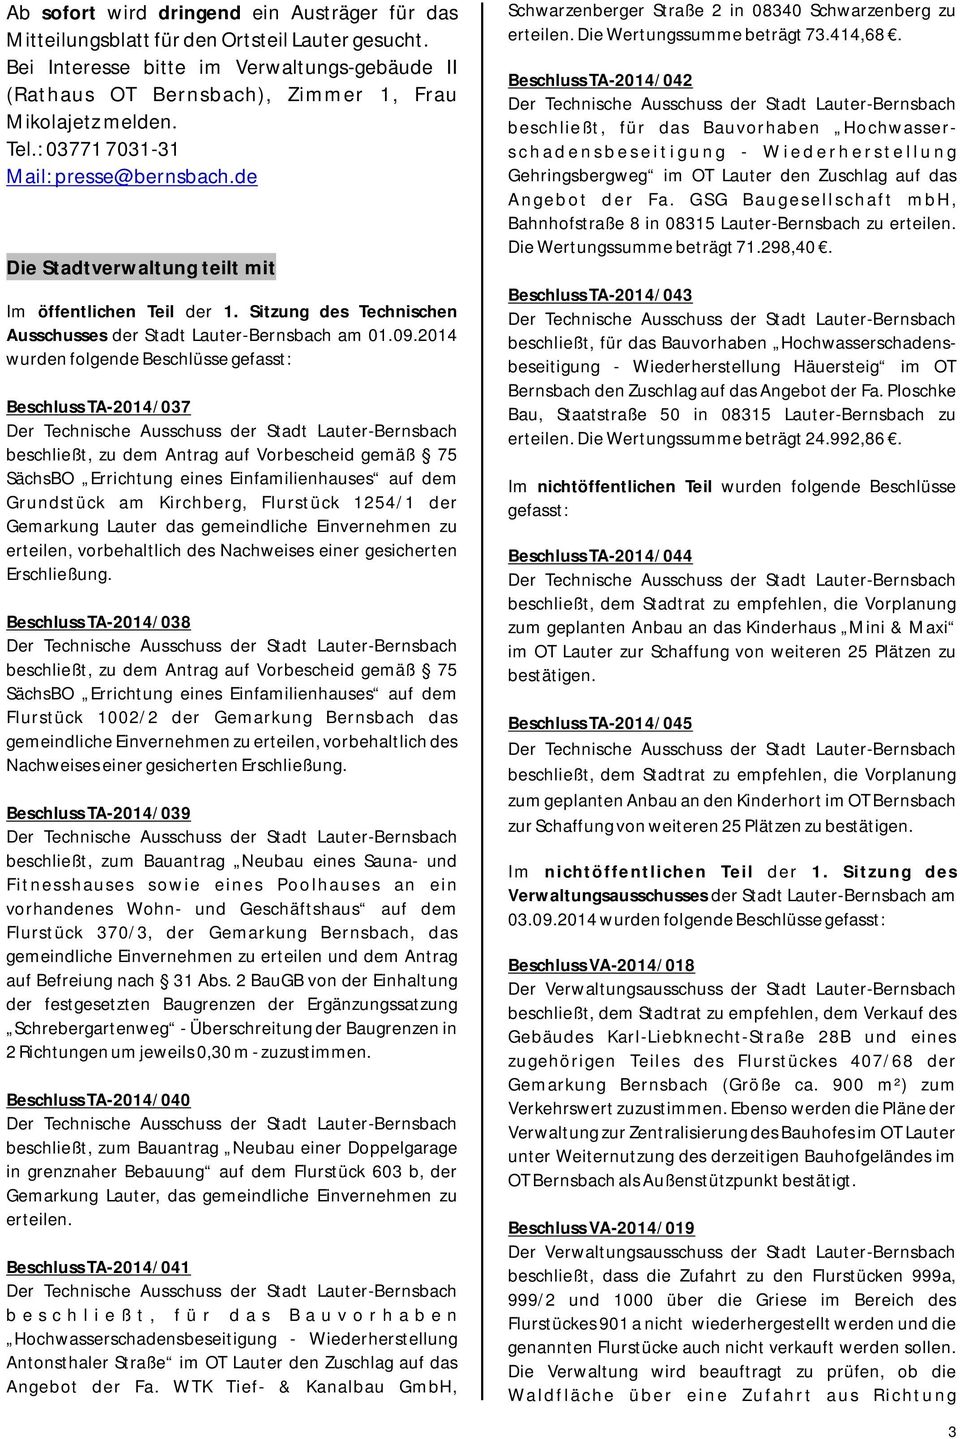 2014 wurden folgende Beschlüsse gefasst: Beschluss TA-2014/037 Der Technische Ausschuss der Stadt Lauter-Bernsbach beschließt, zu dem Antrag auf Vorbescheid gemäß 75 SächsBO Errichtung eines